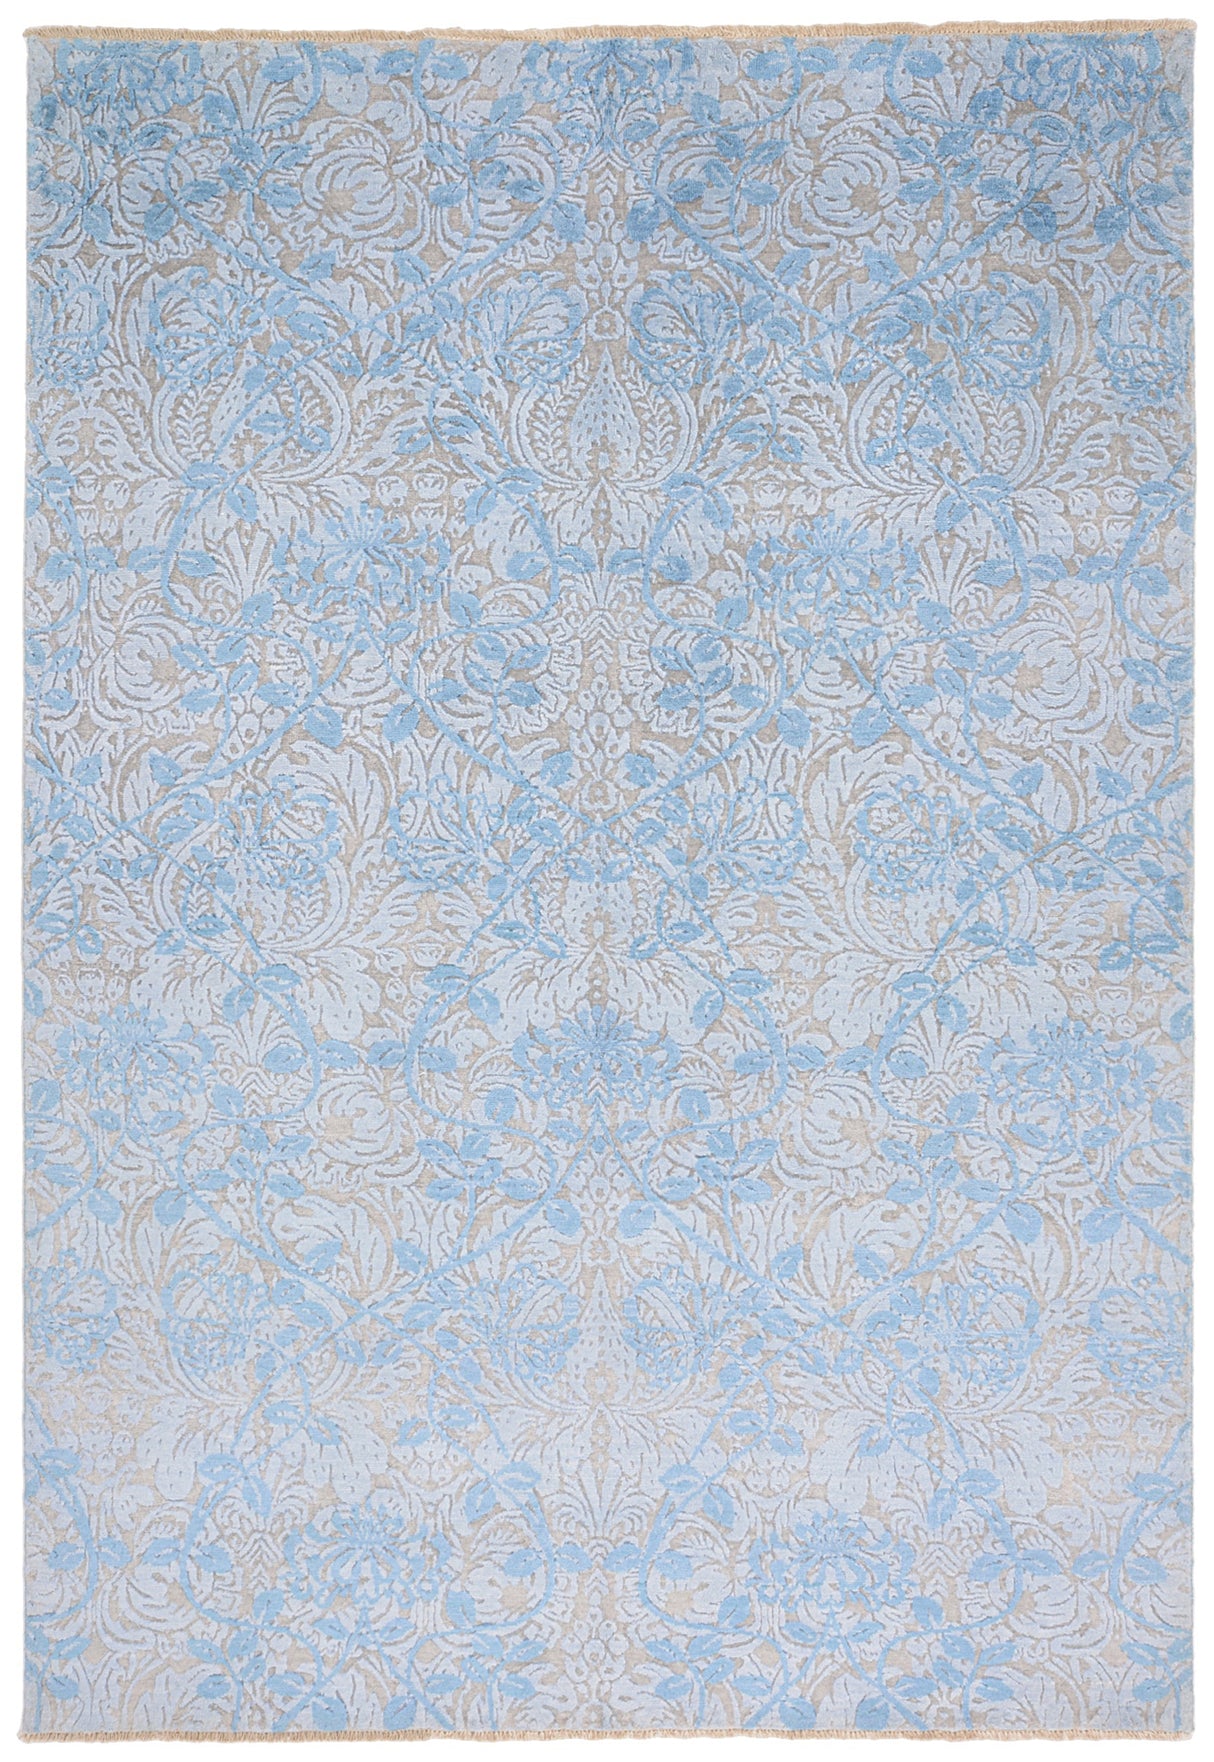 Carpete de design moderno | 243 x 166 cm